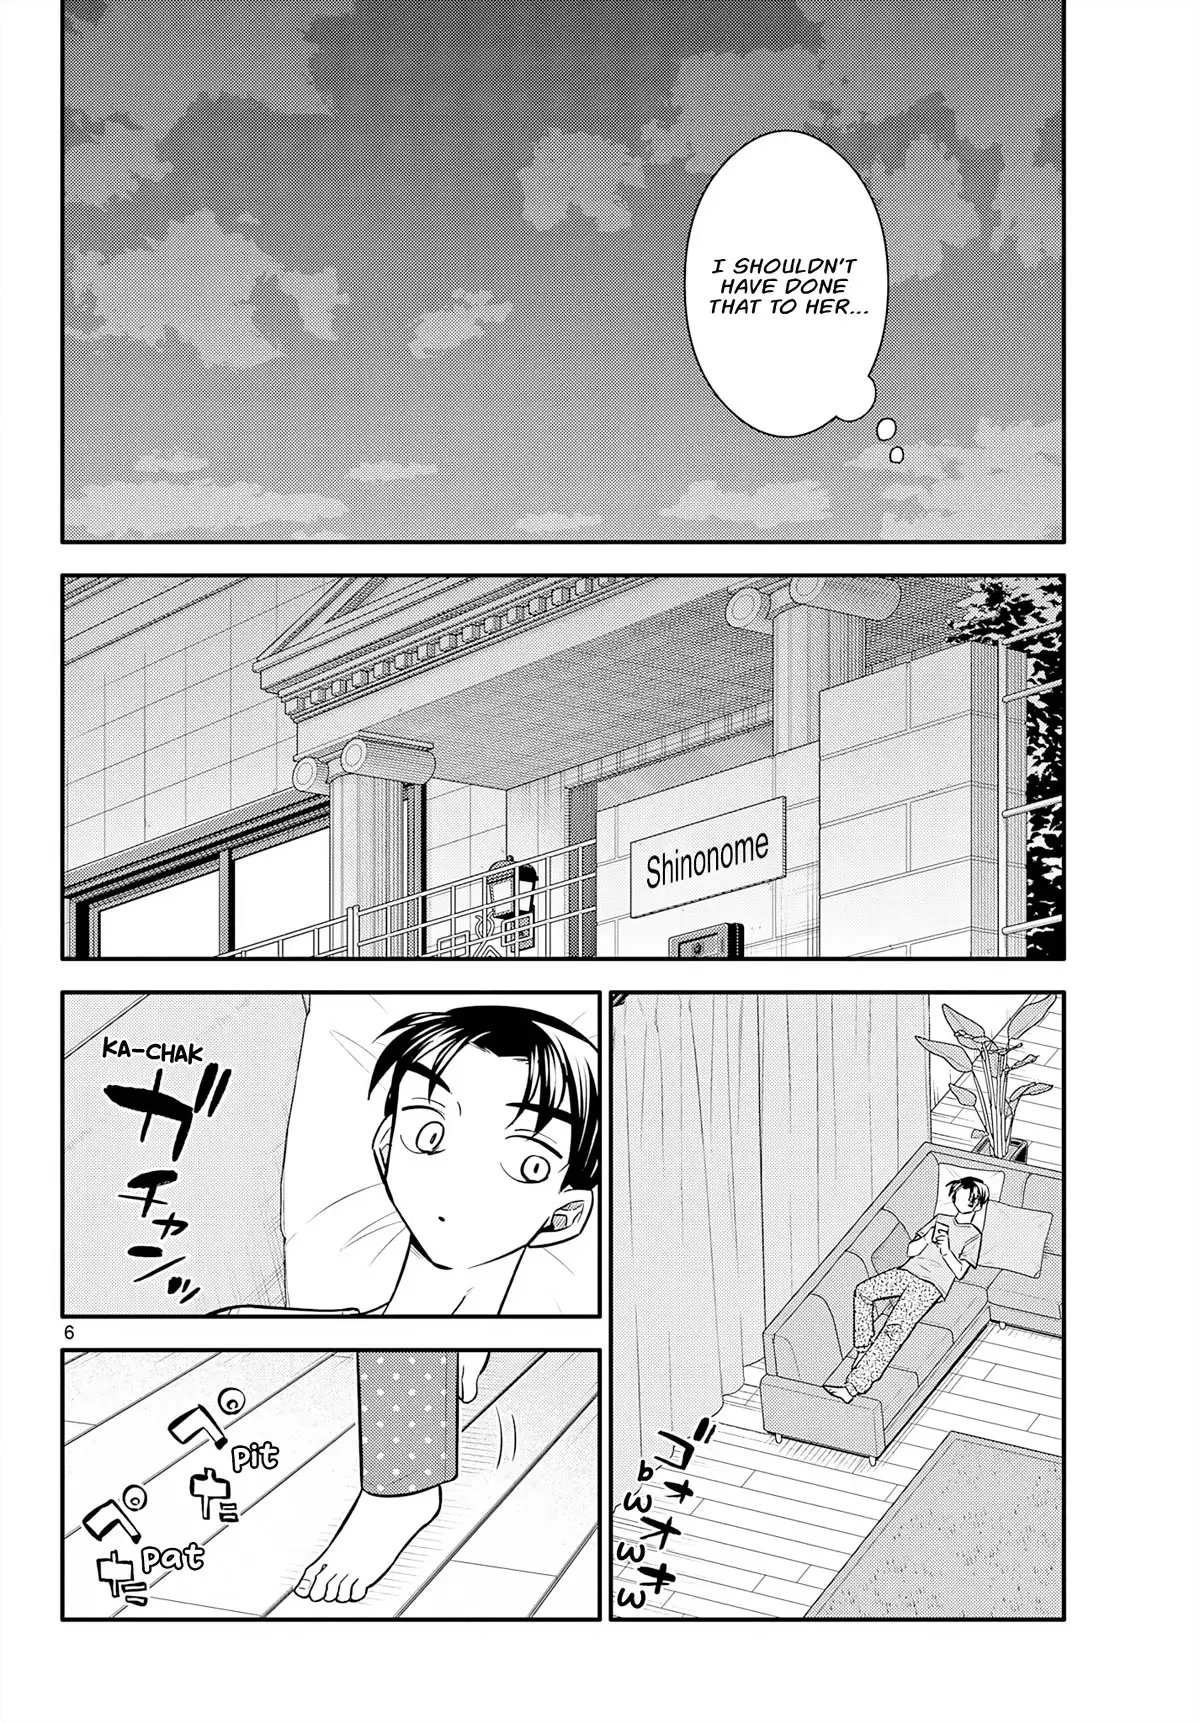 Chiisai Boku No Haru - 10 page 6-01026b85